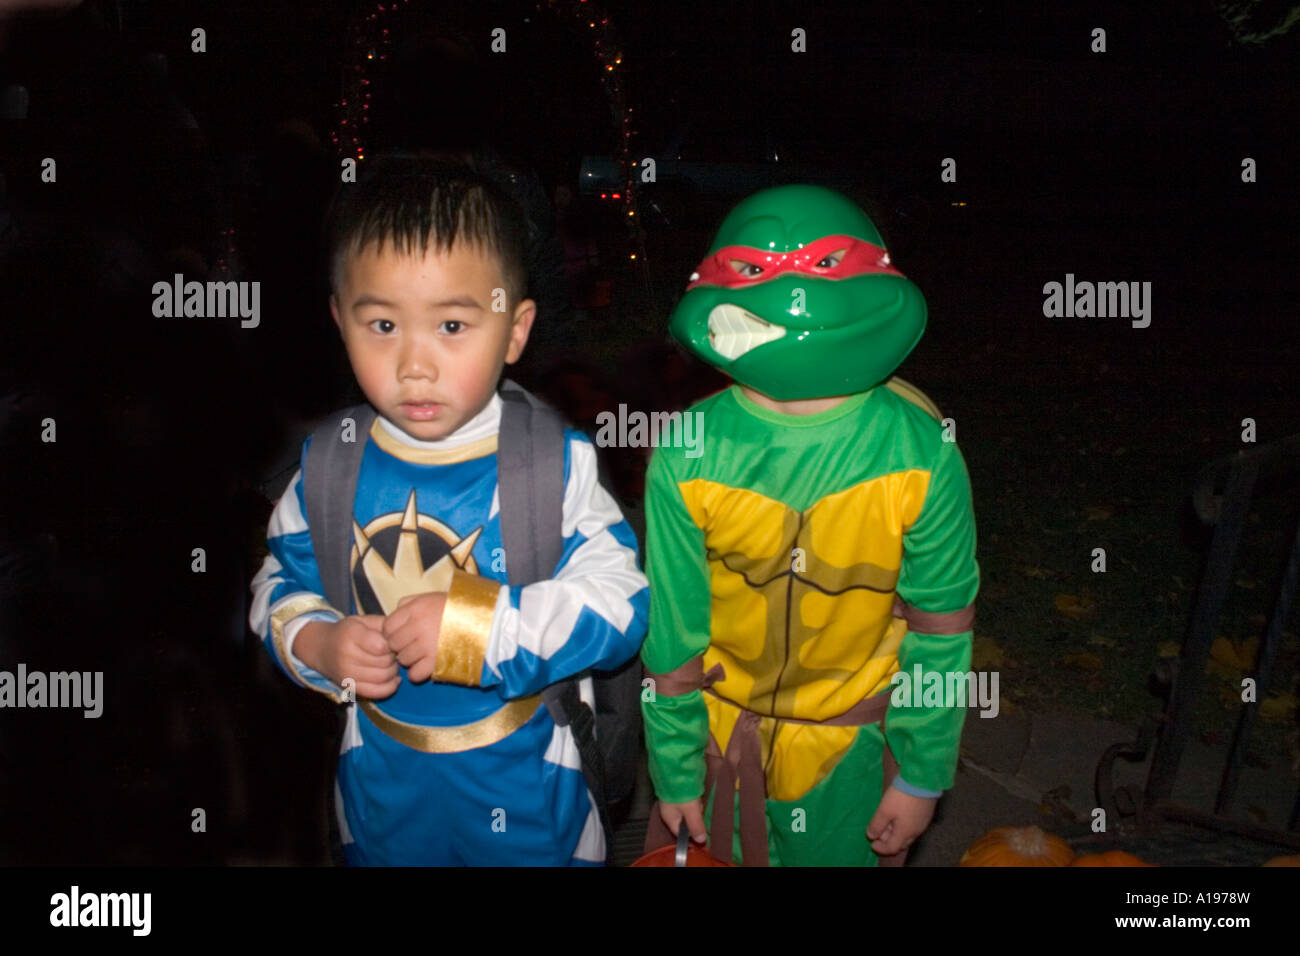 Ninja turtle immagini e fotografie stock ad alta risoluzione - Alamy